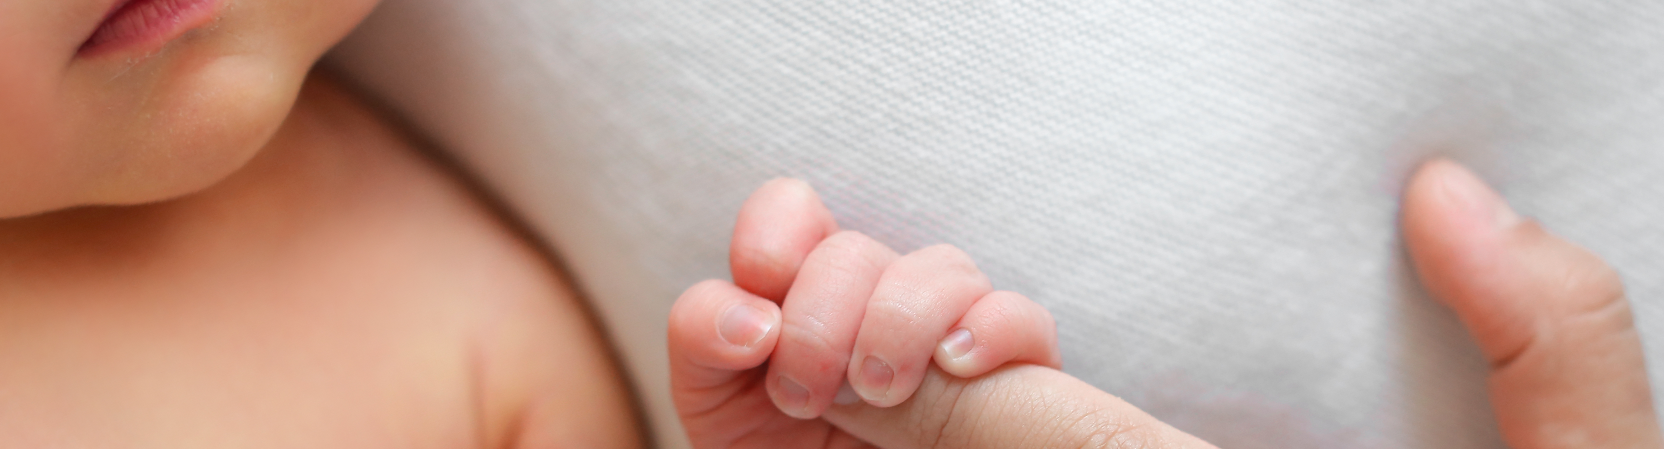 Formation pédiatrique I : Prise en charge du nourrisson et du bébé